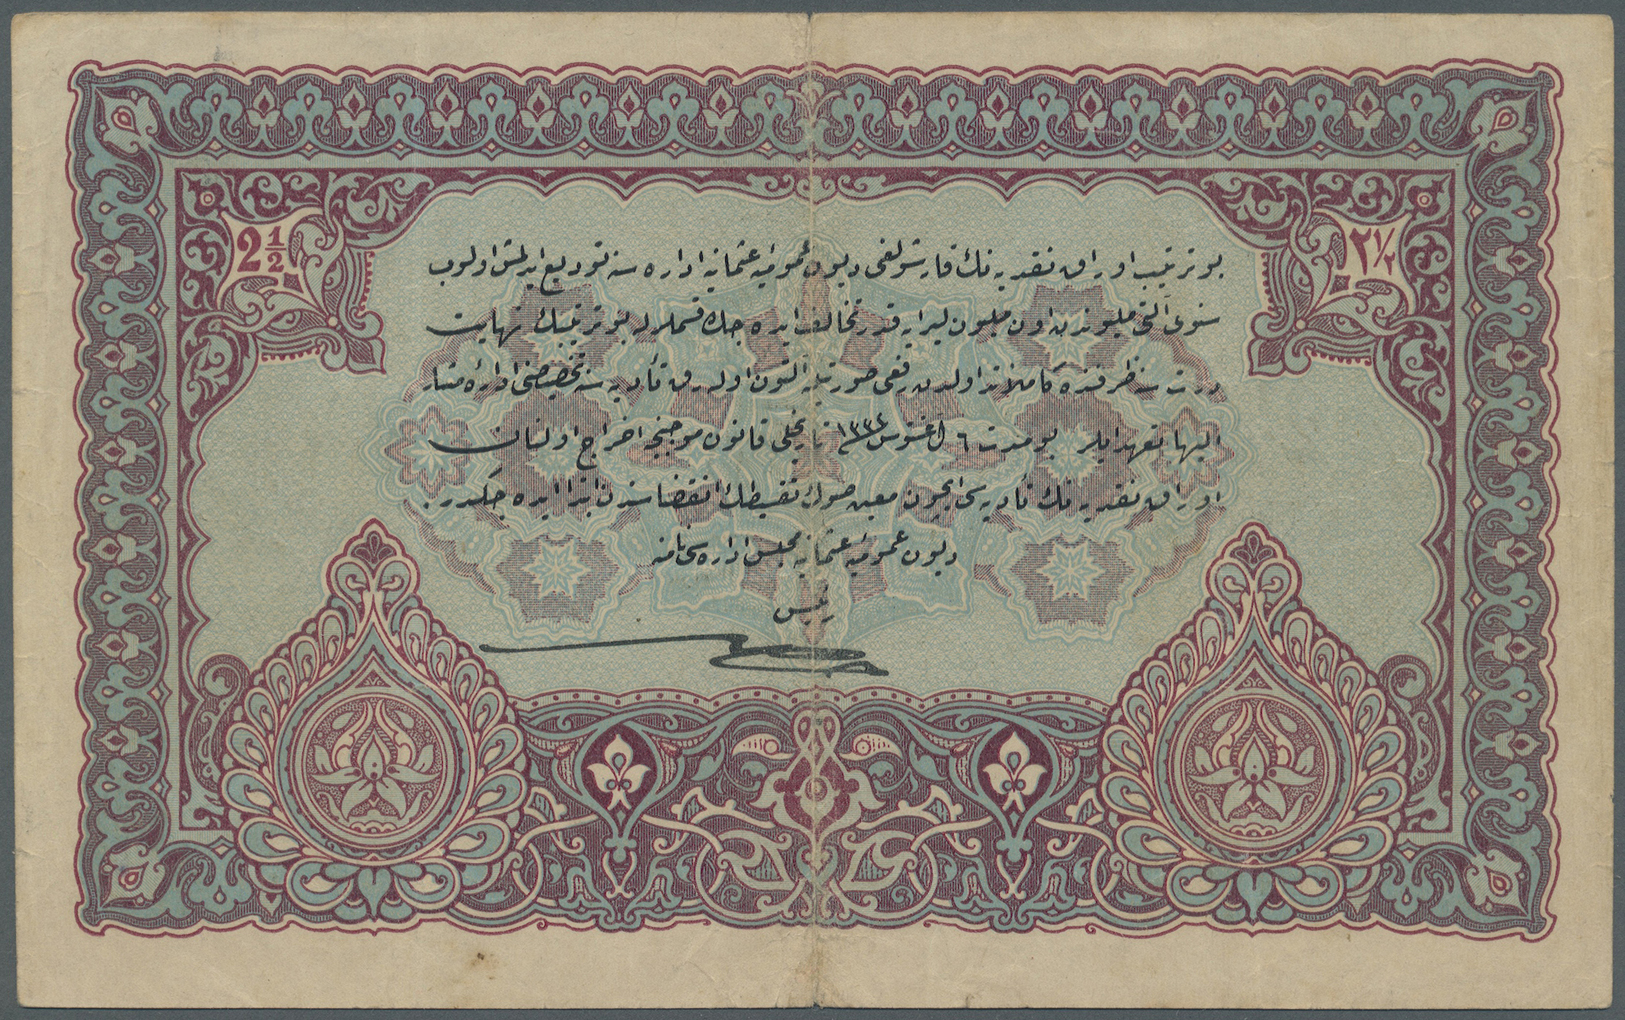 03120 Turkey / Türkei: 2 1/2 Livres L.1932 P. 100. The Note Issued Under The "Dette Publique Ottomane" Has A Stronger Ce - Turquie